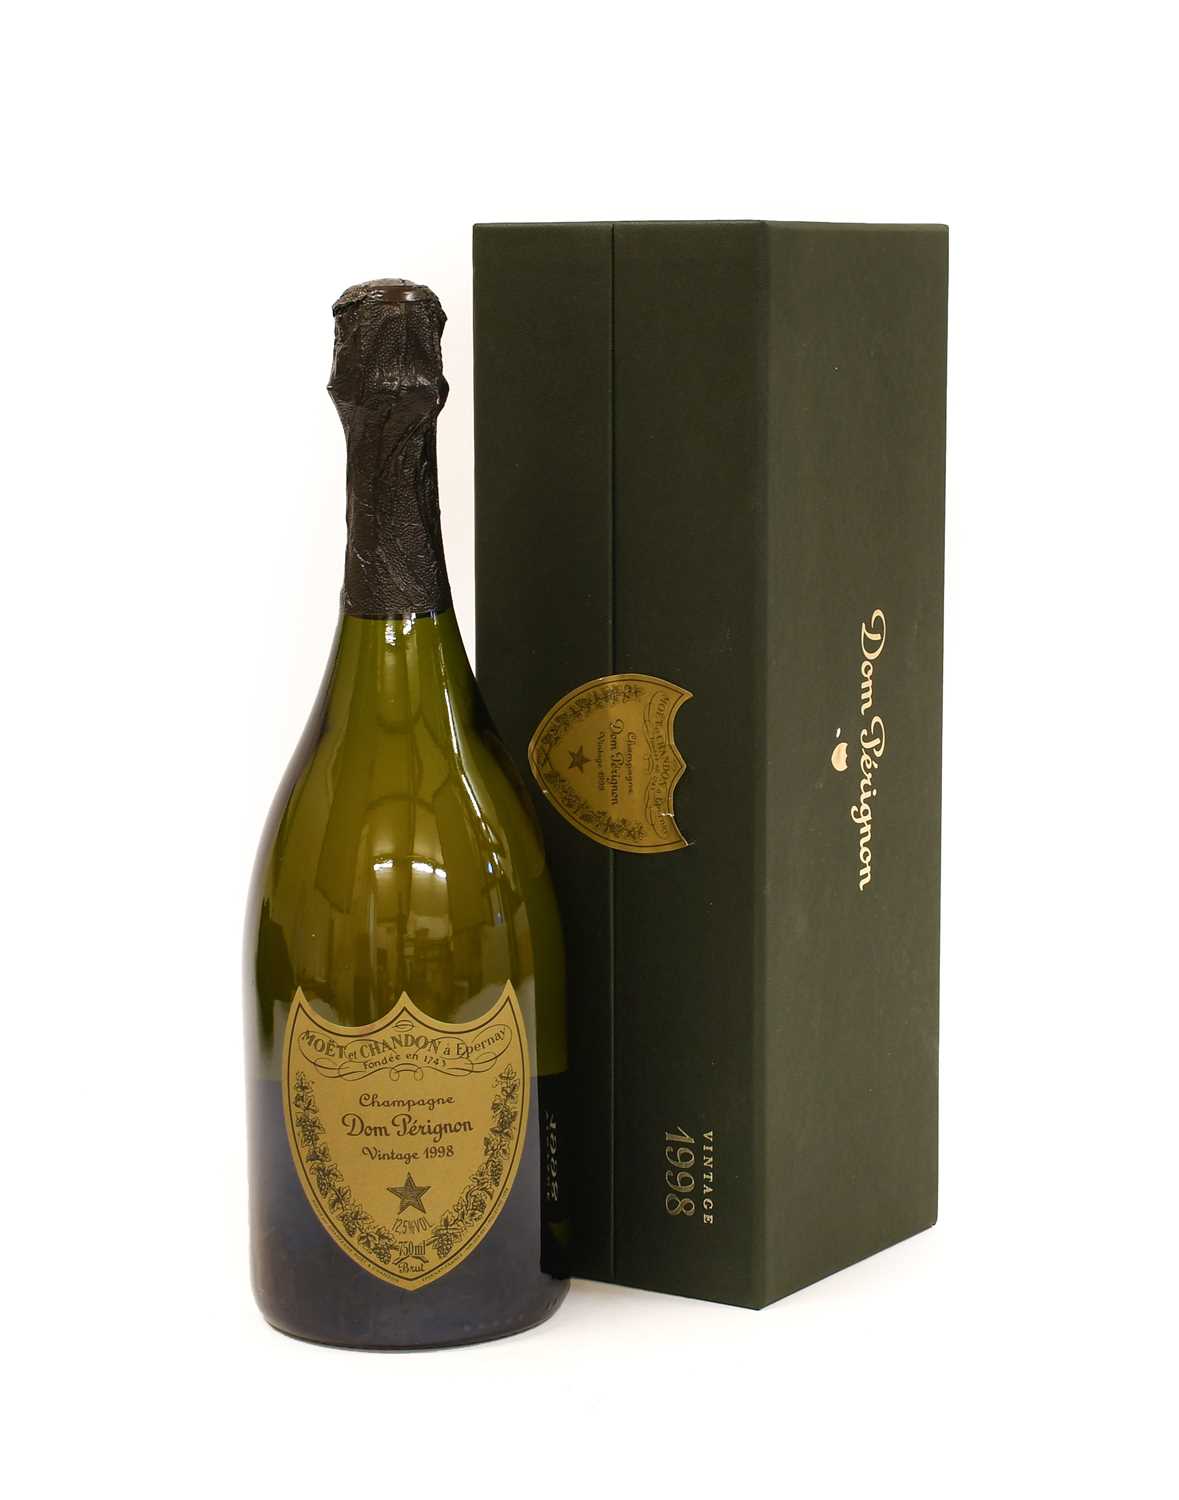 Lot 5009 - Dom Perignon 1998 Vintage Champagne (one bottle)